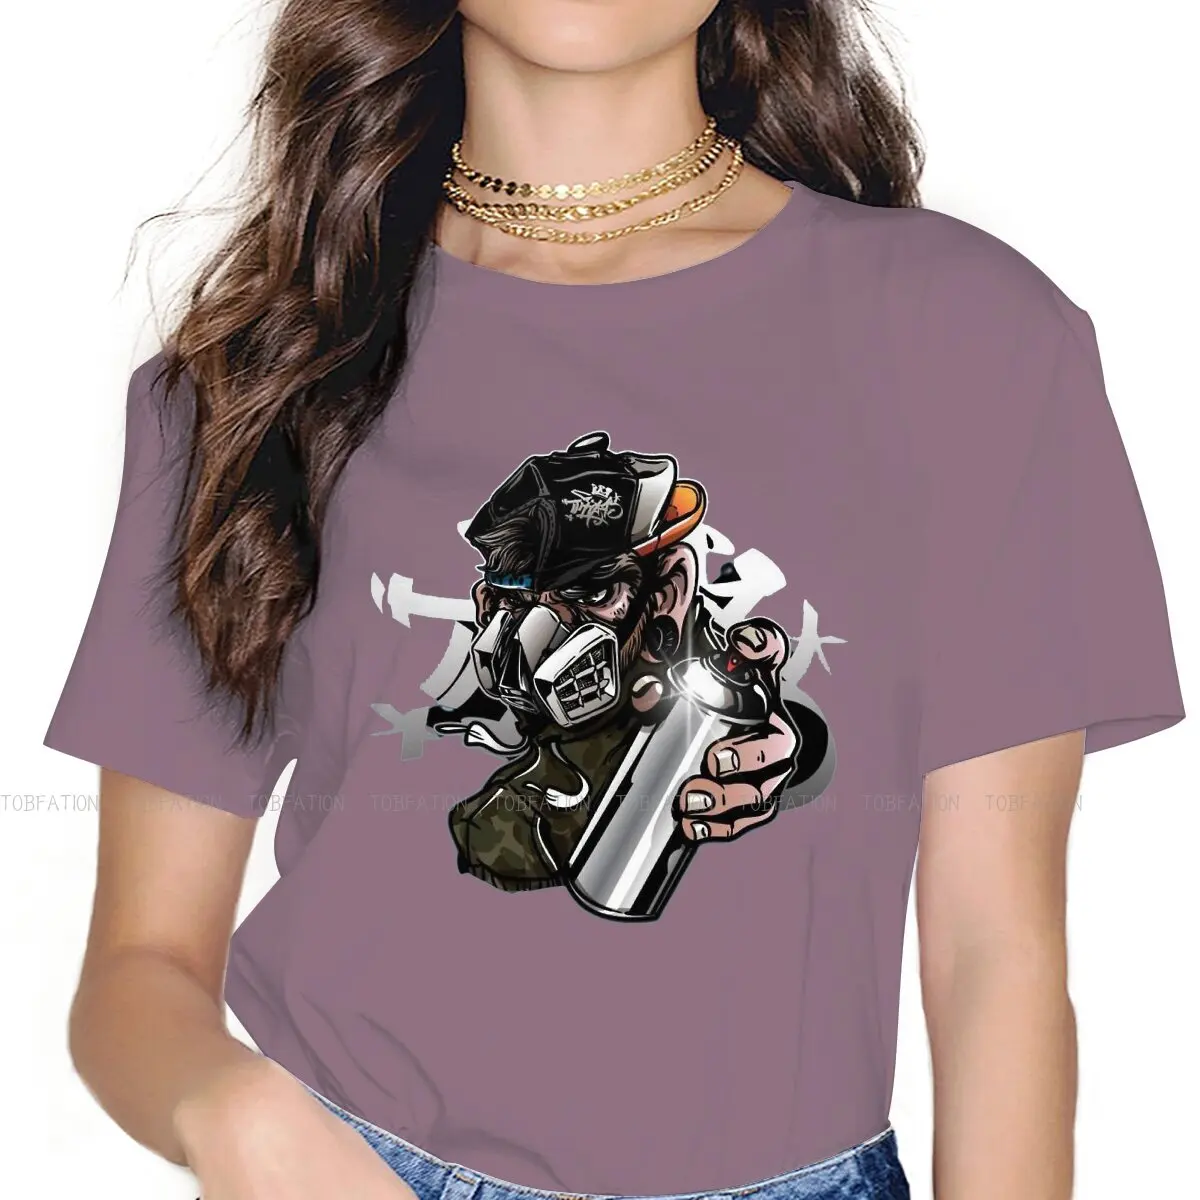 

Футболки Gorillaz Band Jamie Hewlett в стиле хип-хоп из 100% хлопка, футболки с изображением обезьяны и противогаз, отличительная Мужская футболка, новые т...